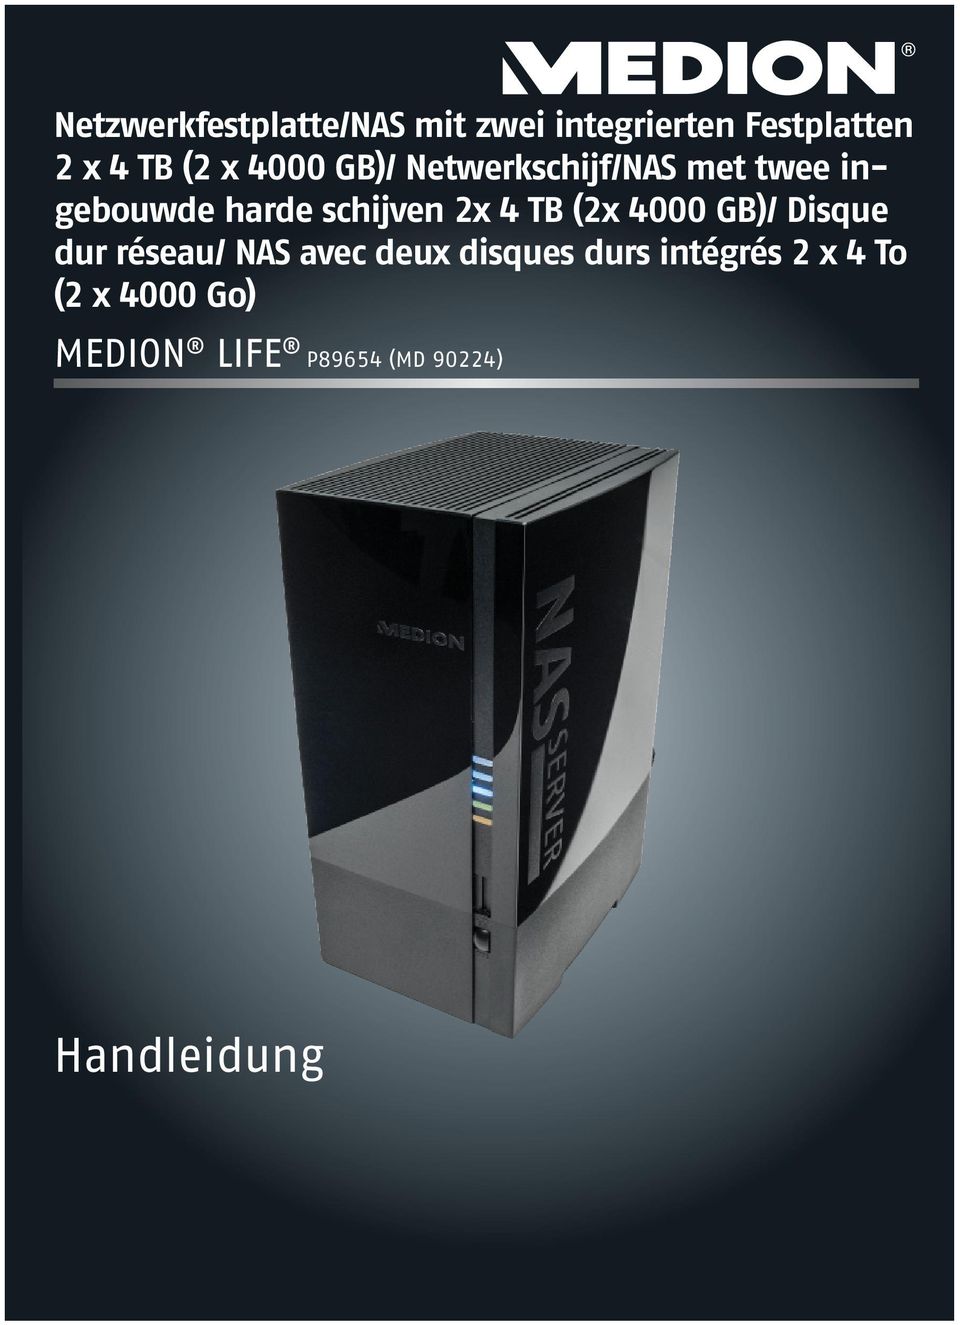 4 TB (2x 4000 GB)/ Disque dur réseau/ NAS avec deux disques durs